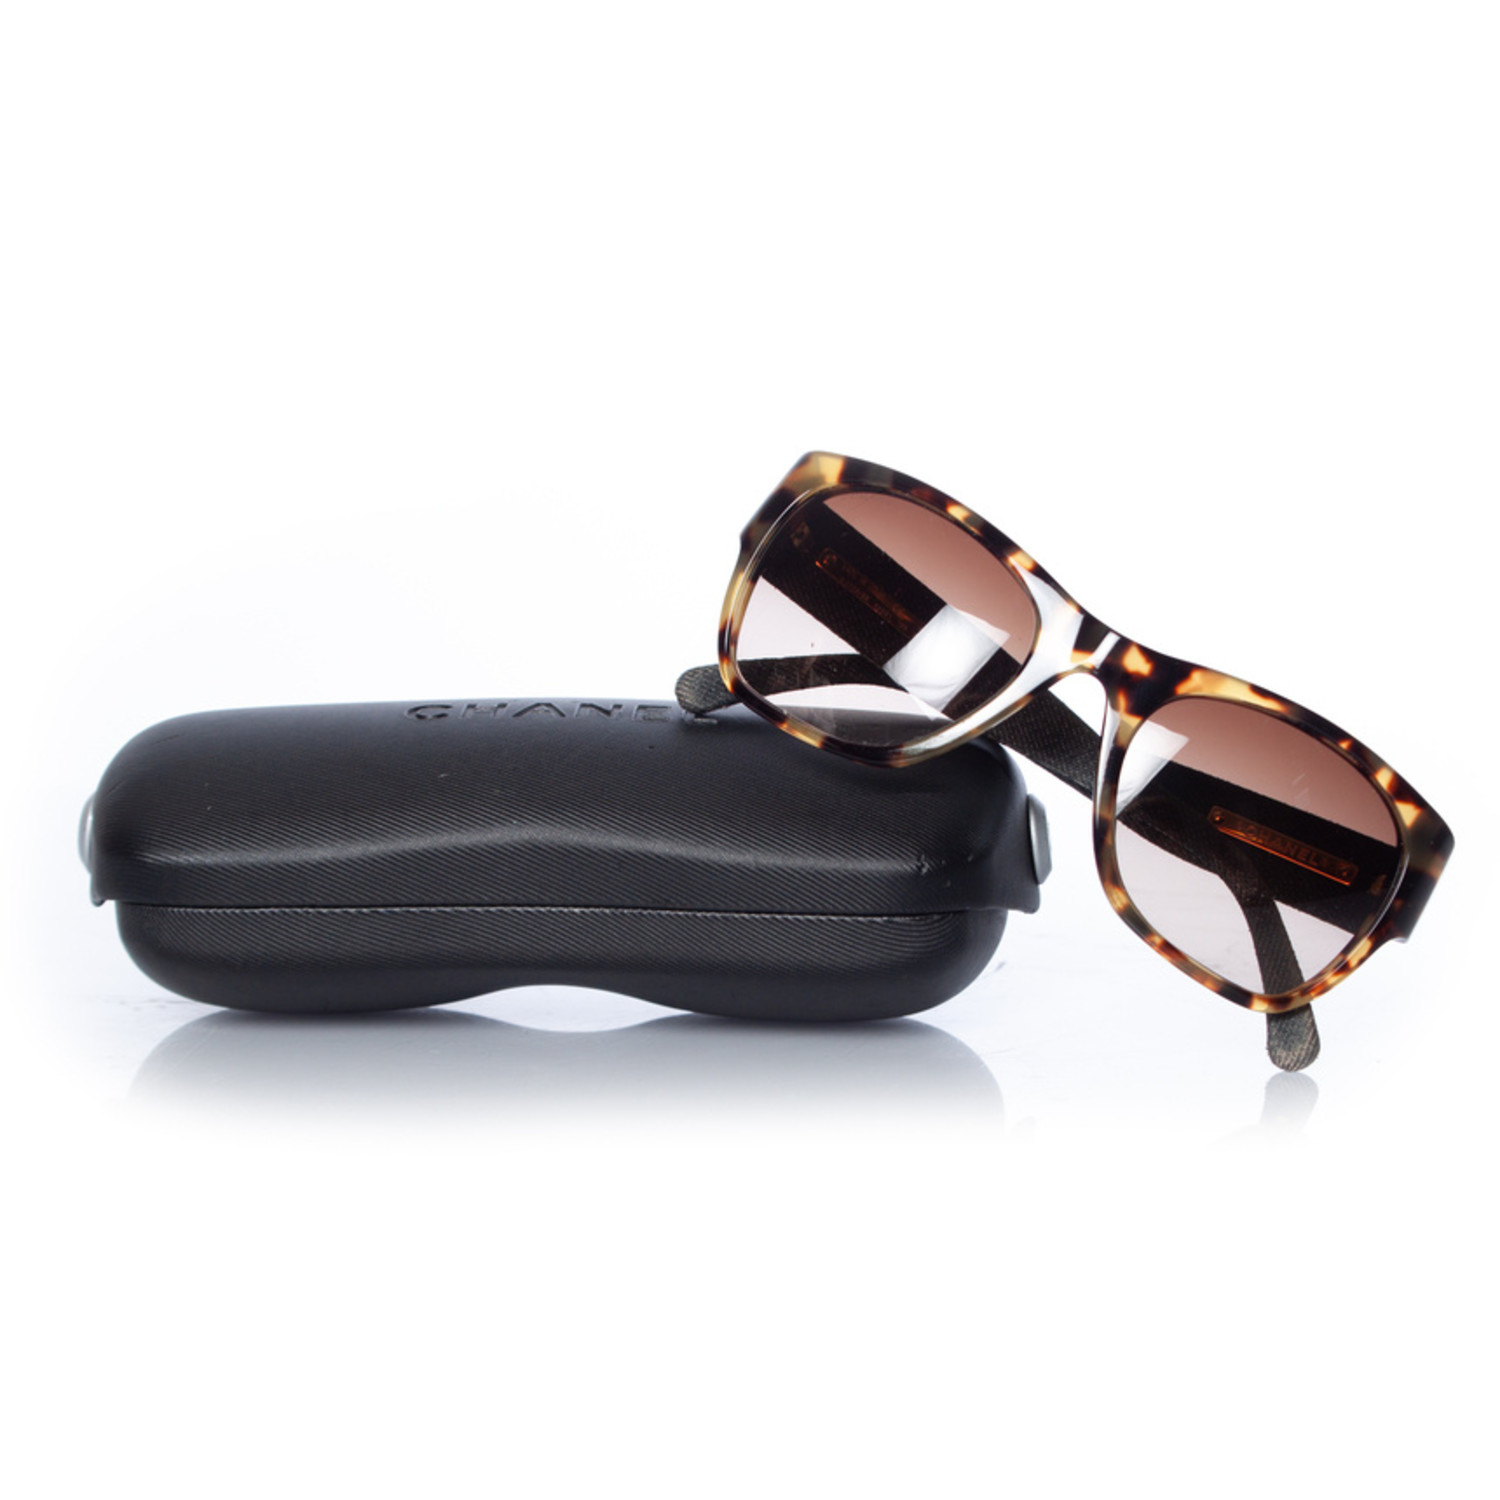 Chanel, Tortoise and denim sunglasses - Unique Designer Pieces